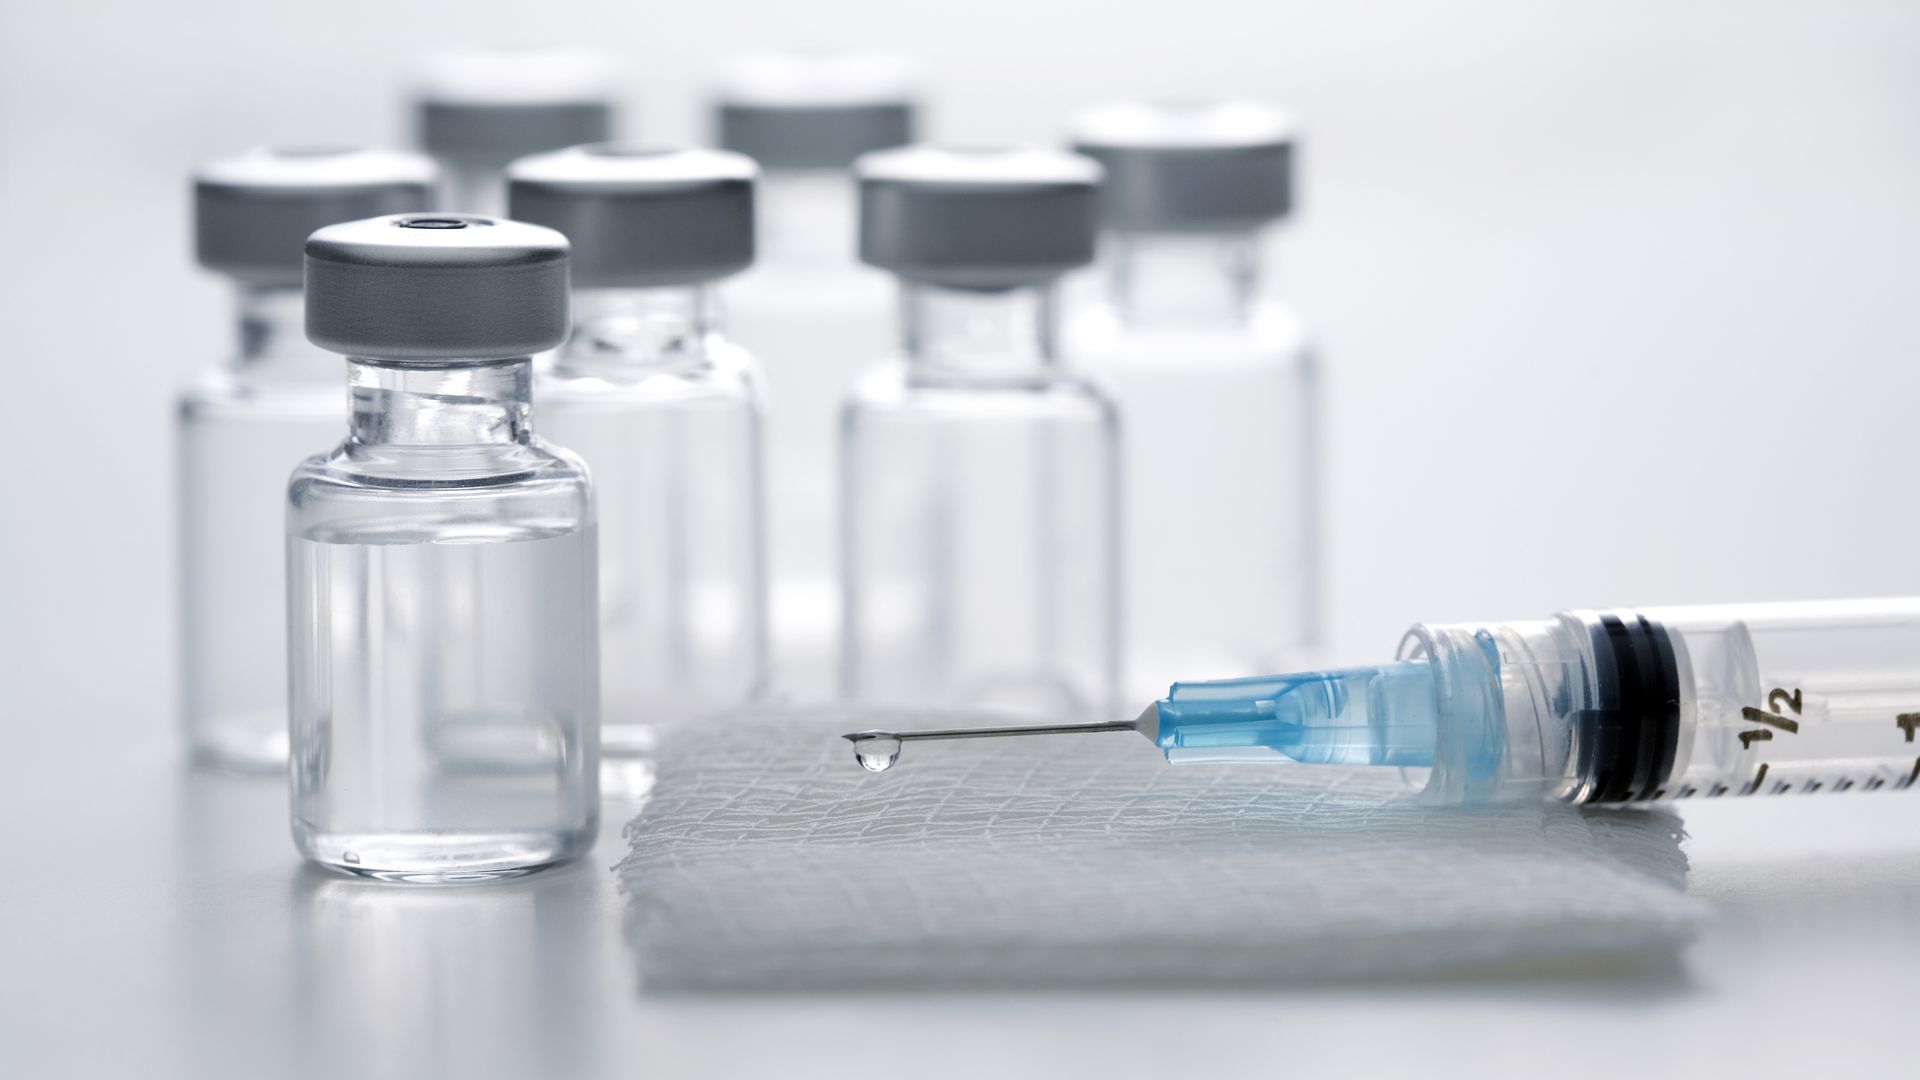 Syringe on gauze pad surrounded by vaccine bottles